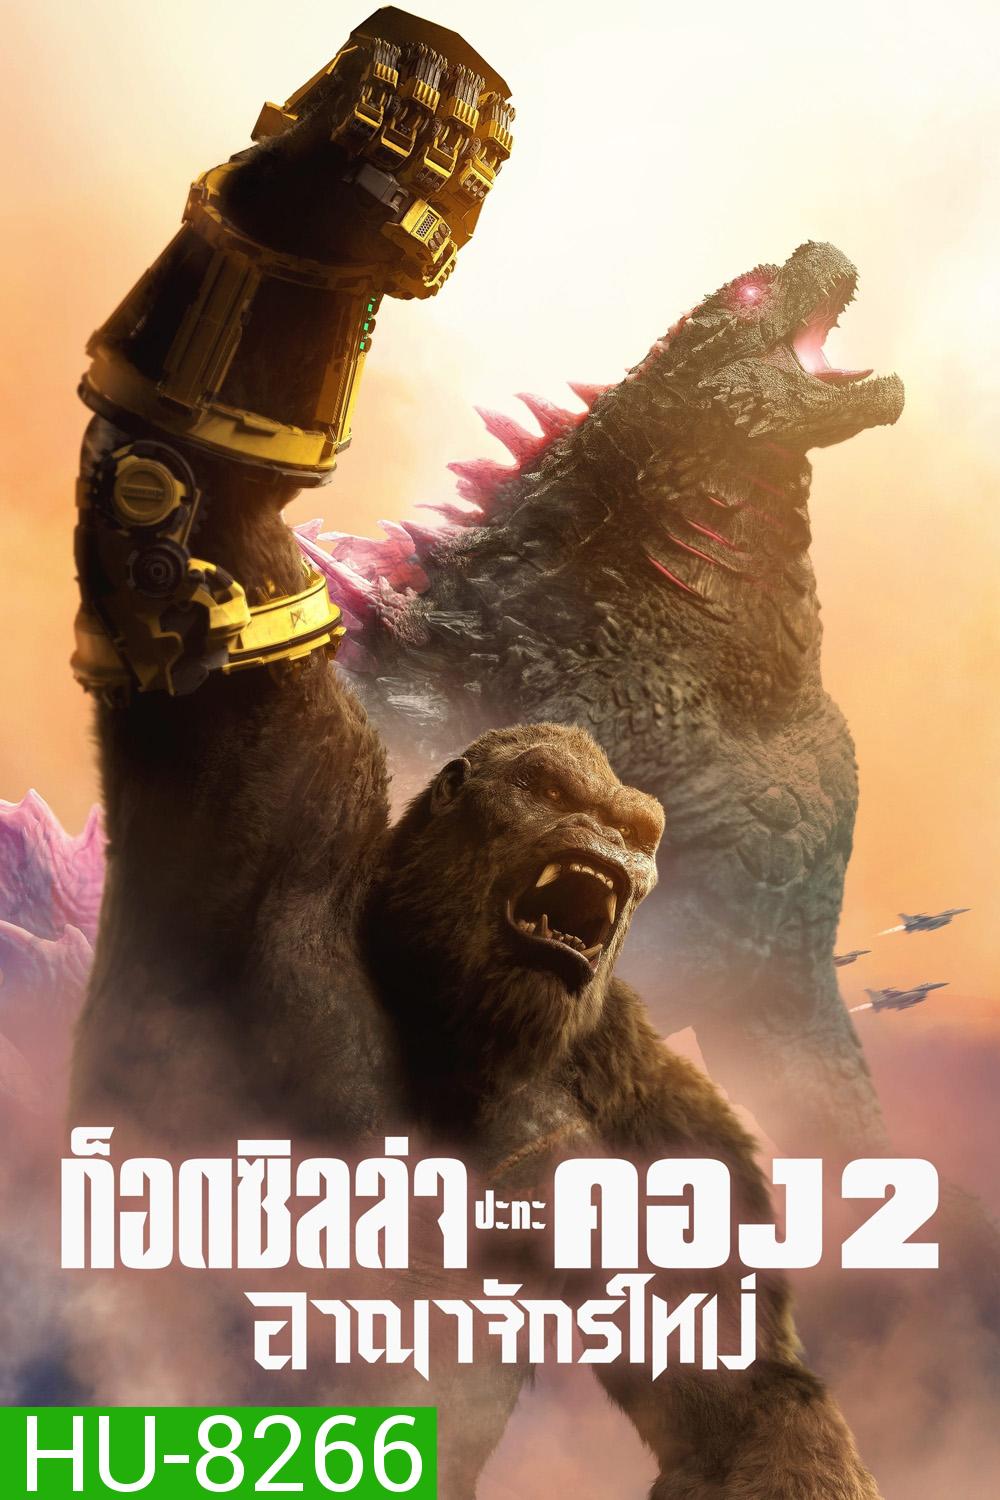 Godzilla x Kong The New Empire ก็อดซิลล่า ปะทะ คอง 2 อาณาจักรใหม่ (2024)